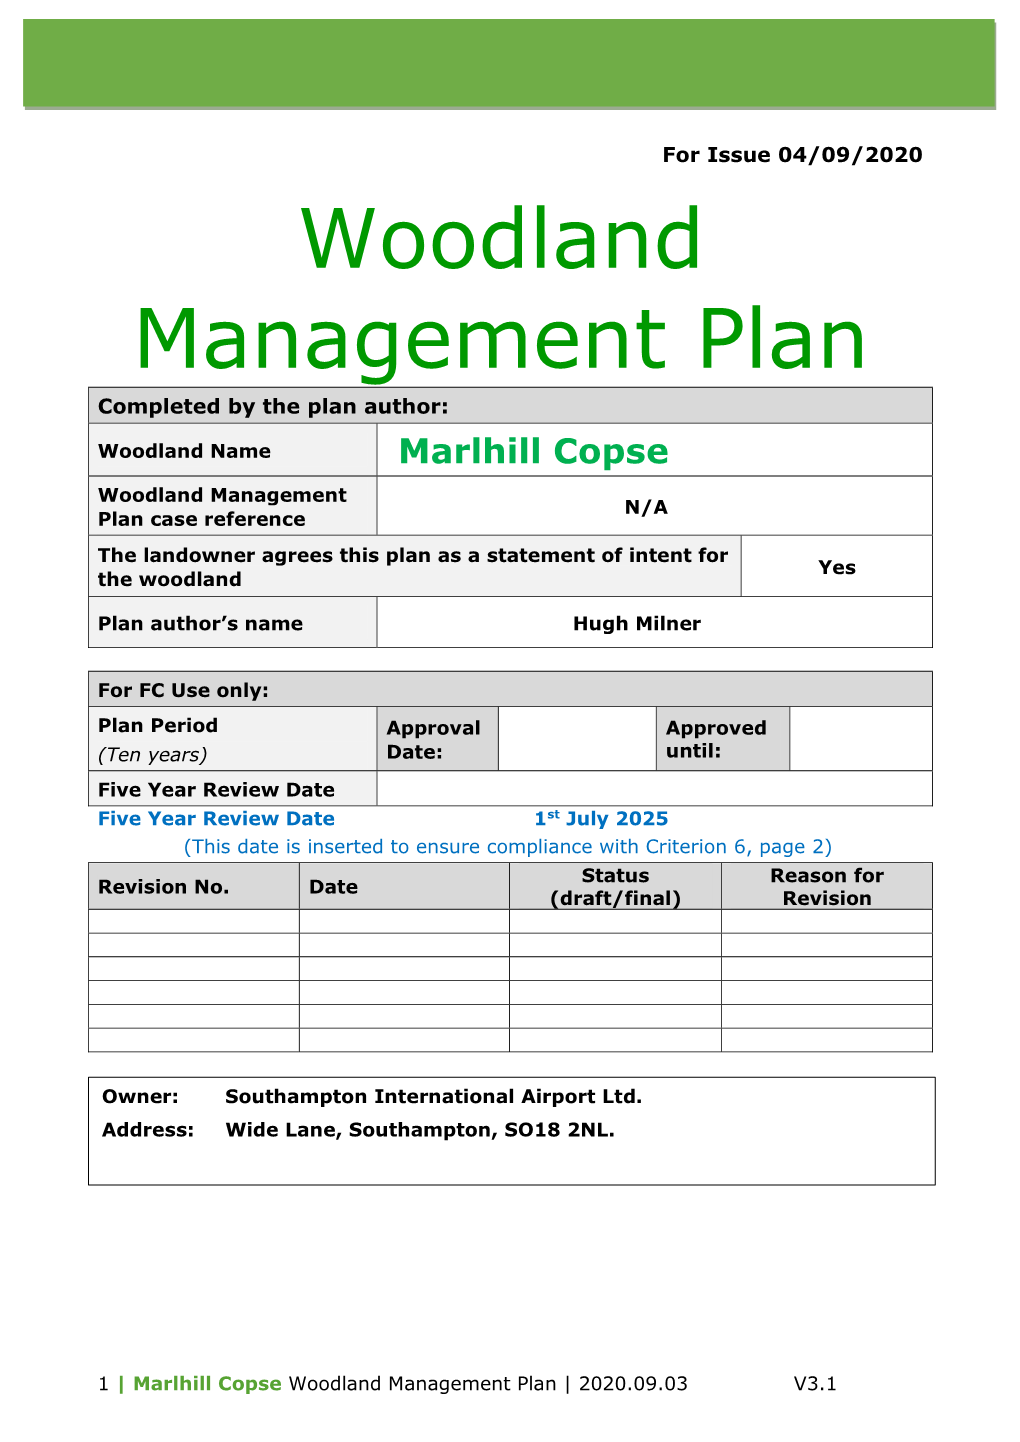 Marlhill Copse Woodland Management Plan | 2020.09.03 V3.1